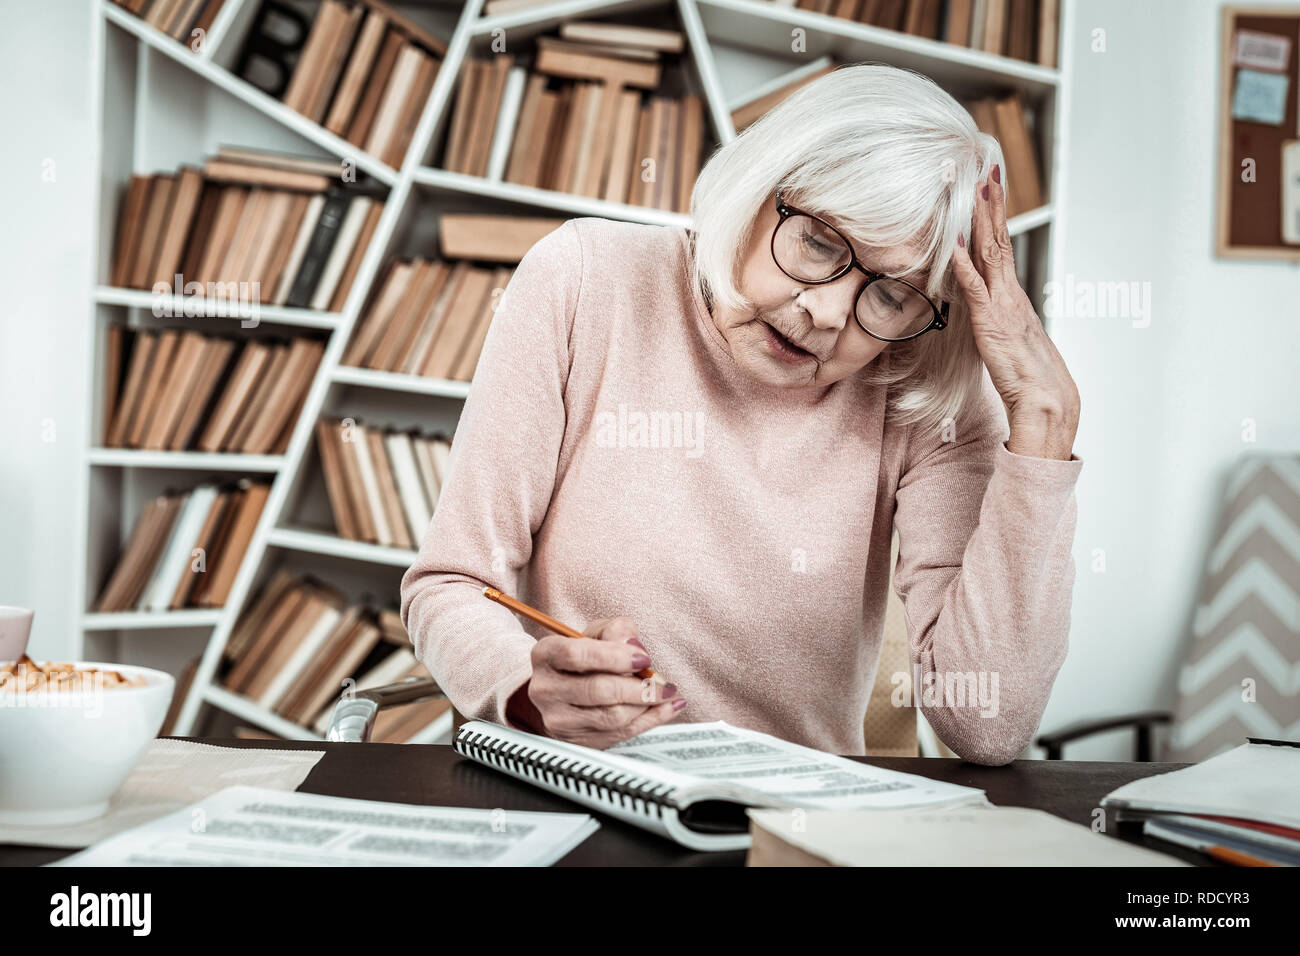 Aufmerksame ältere weibliche Person Aufgabe Lesen bewusst Stockfoto